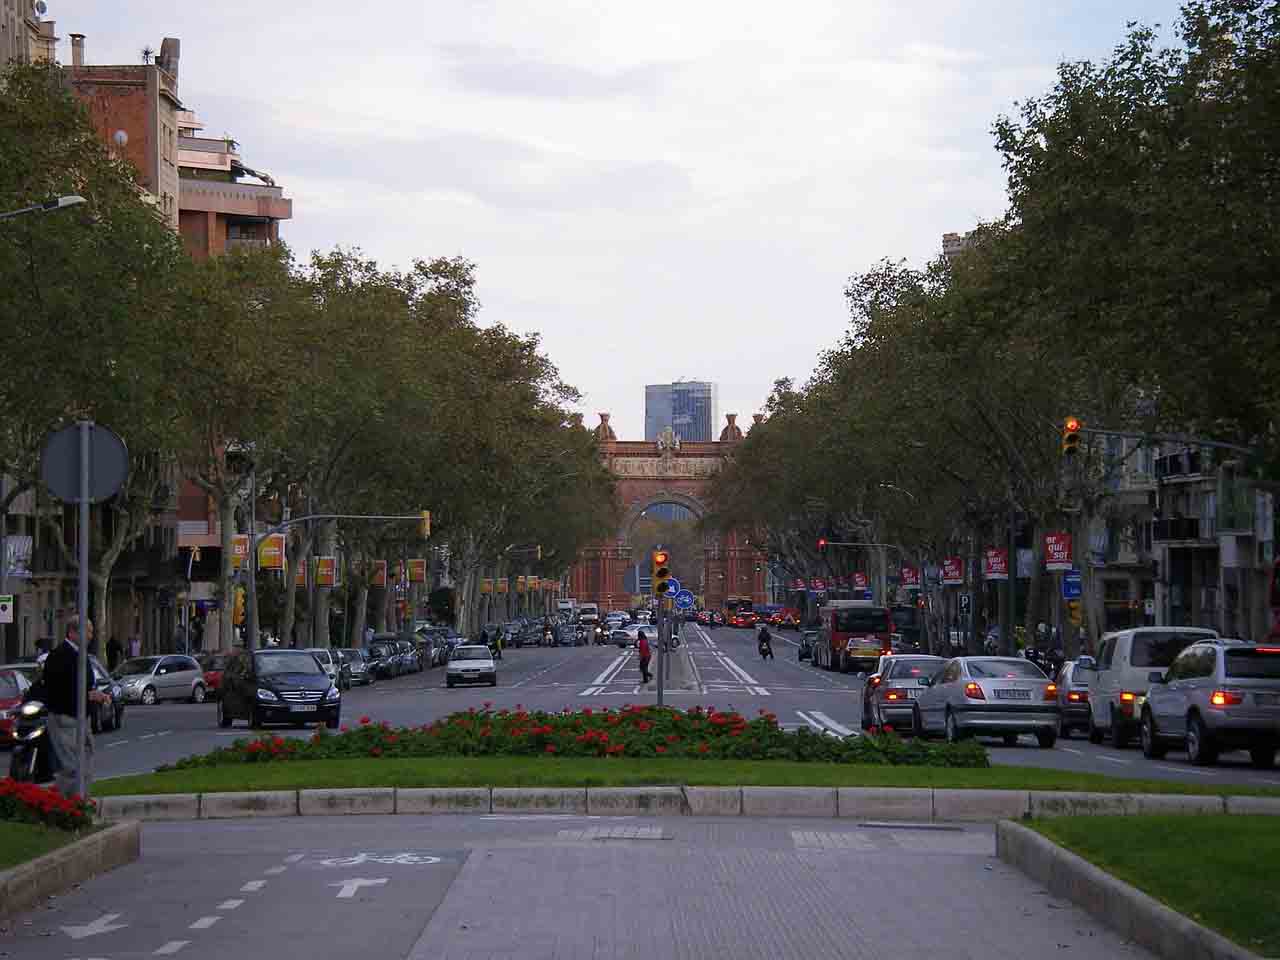 Activado aviso preventivo por contaminación en la conurbación de Barcelona / Foto: Pixabay